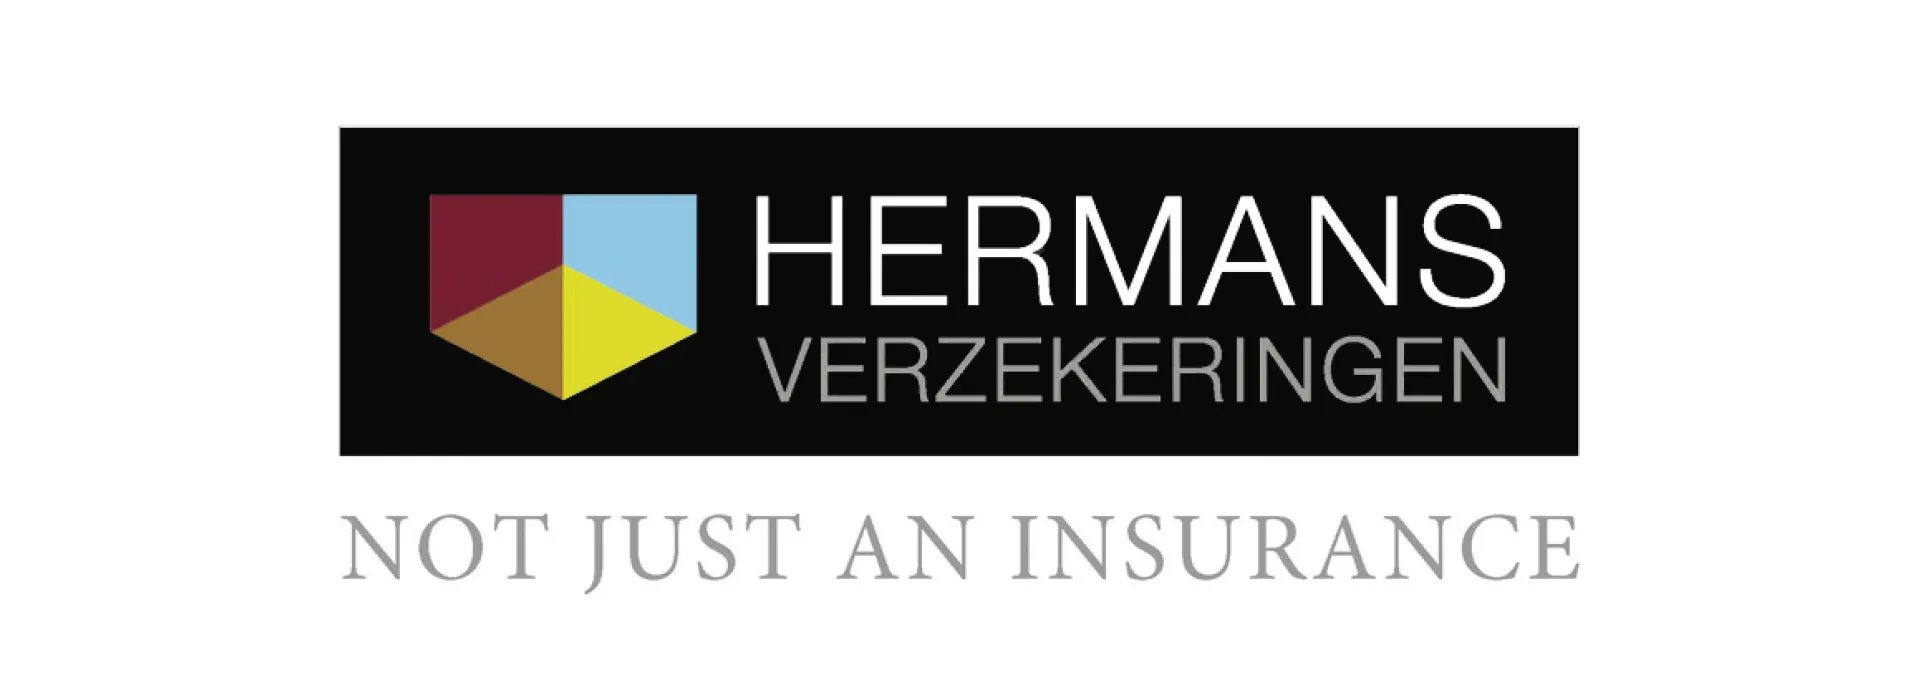 Hermans verzekeringen